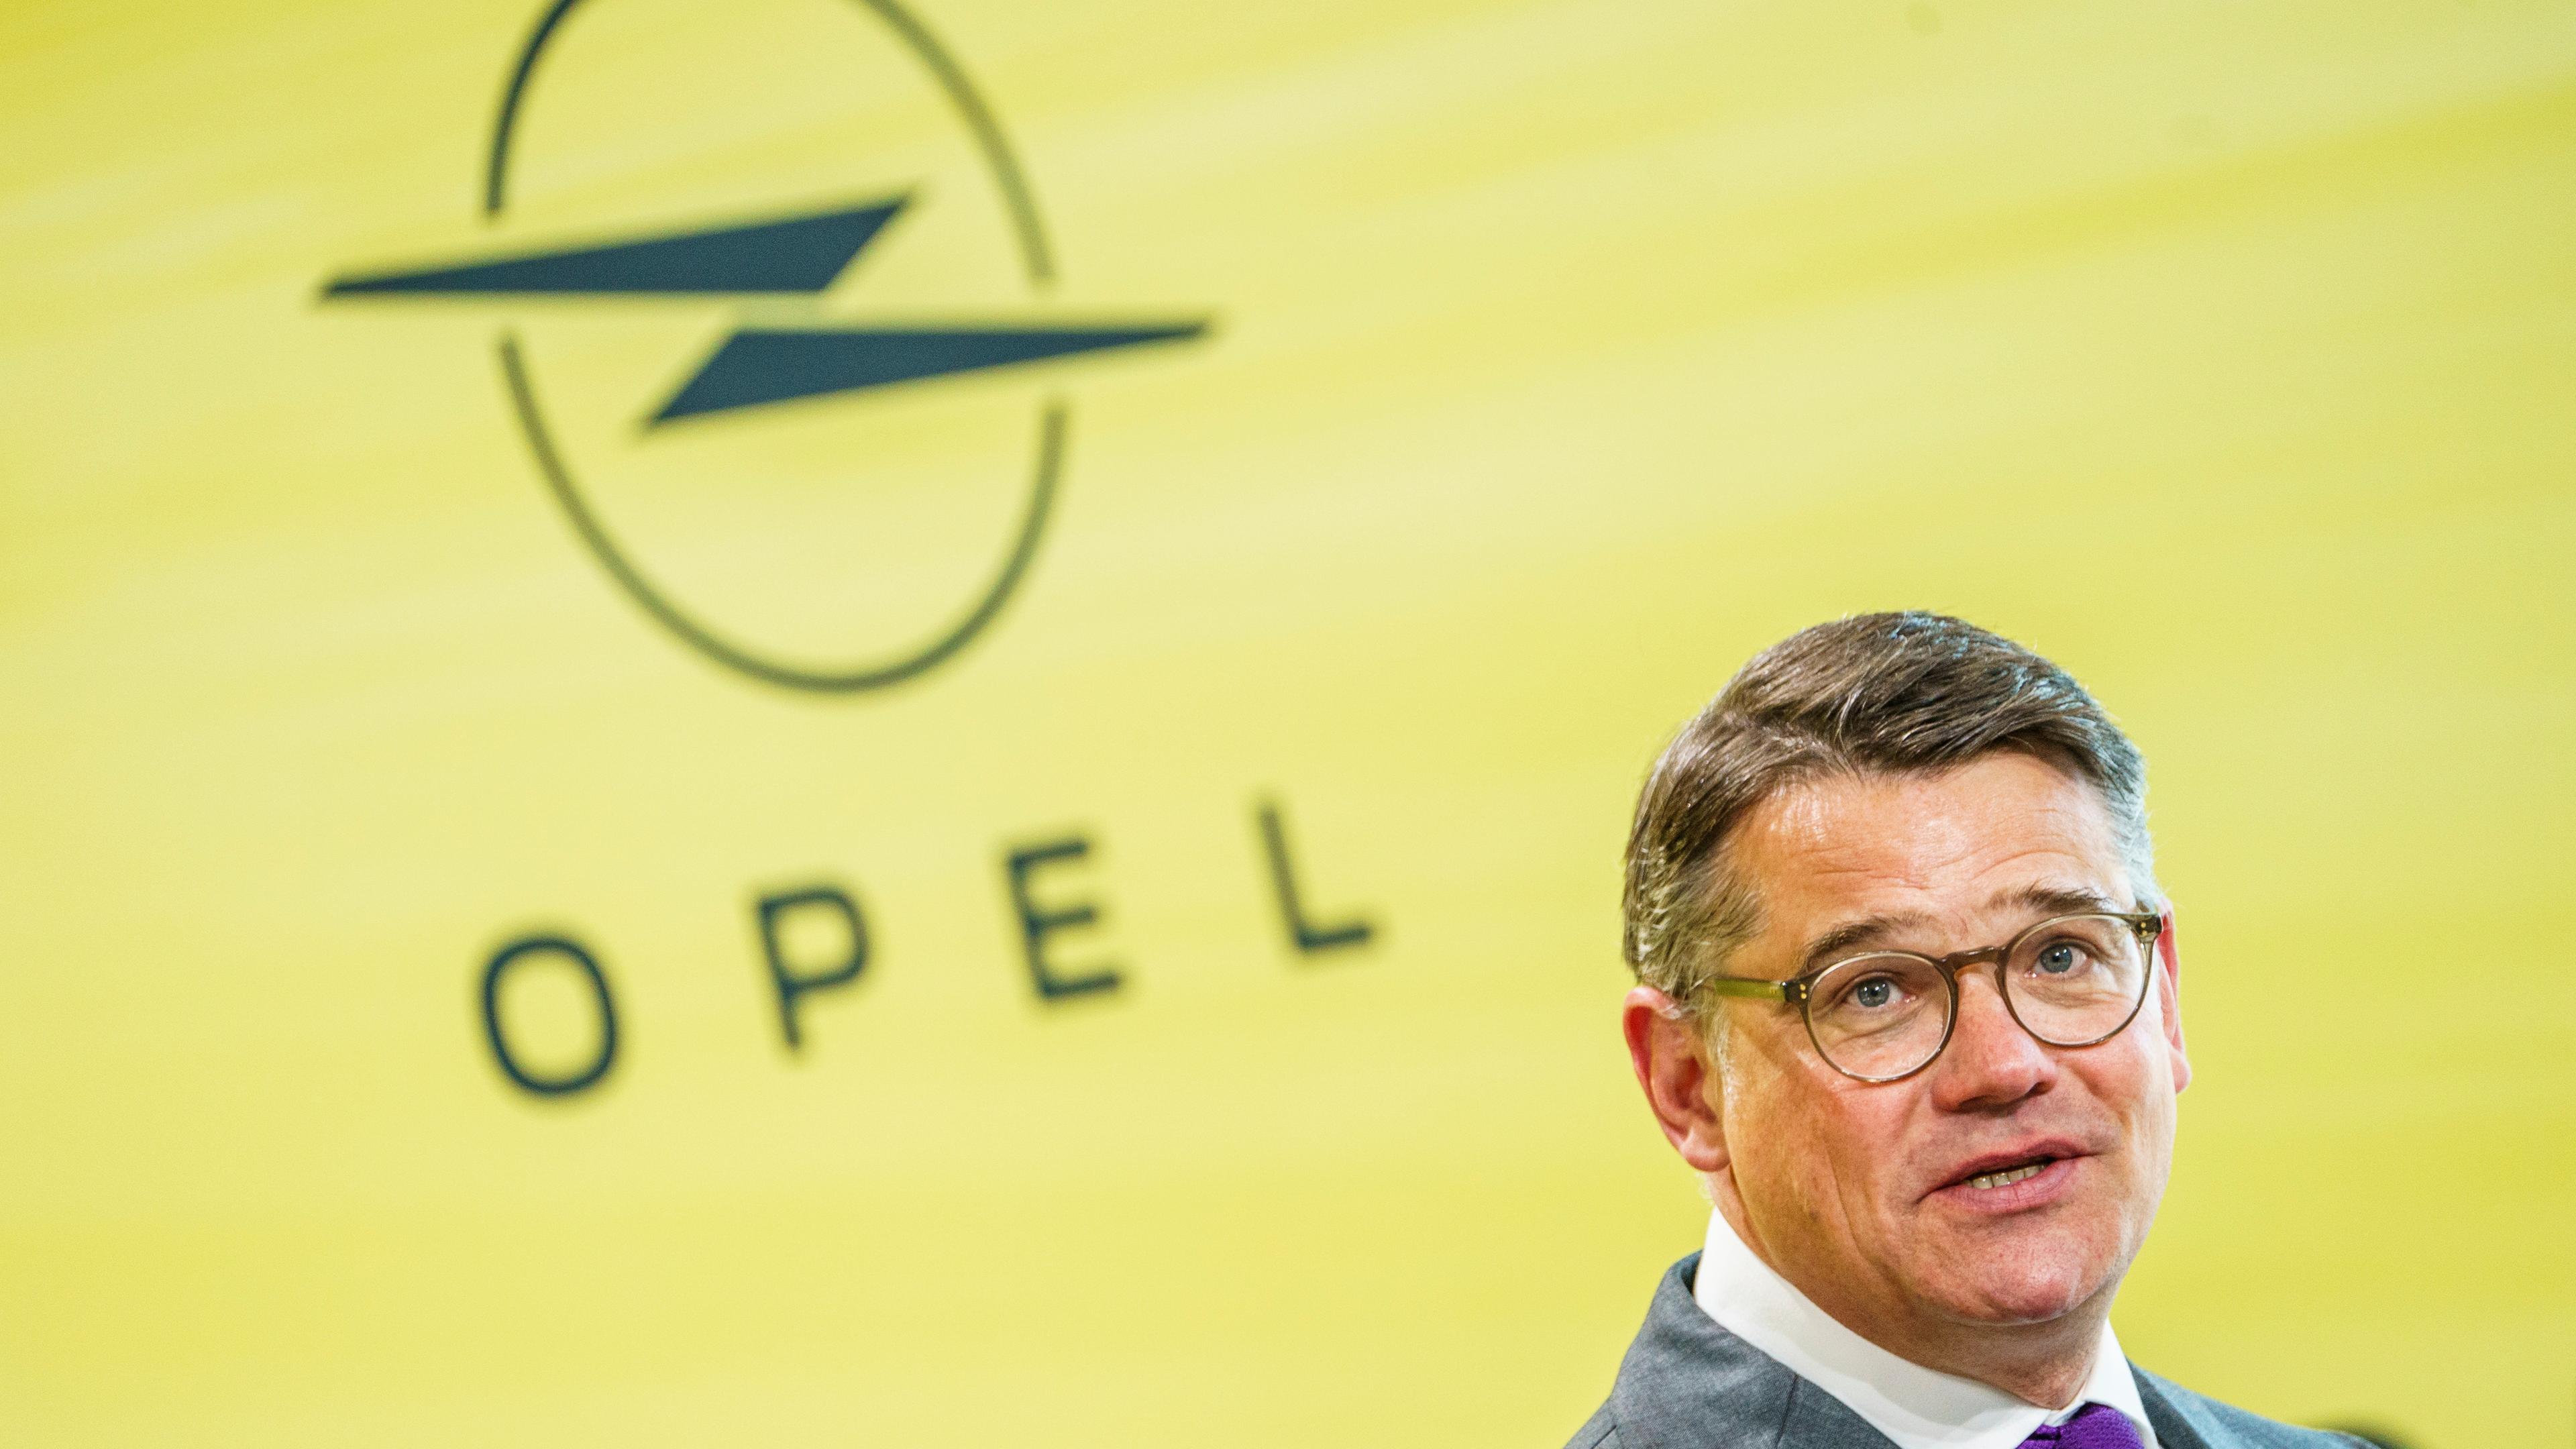 Hessen, Rüsselsheim: Boris Rhein (CDU), Ministerpräsident von Hessen, spricht bei einem Festakt zum Jubiläum 125 Jahre Fahrzeugbau bei Opel am Stammsitz des Autobauers. Seit 1899 hat Opel mehr als 75 Millionen Fahrzeuge produziert.